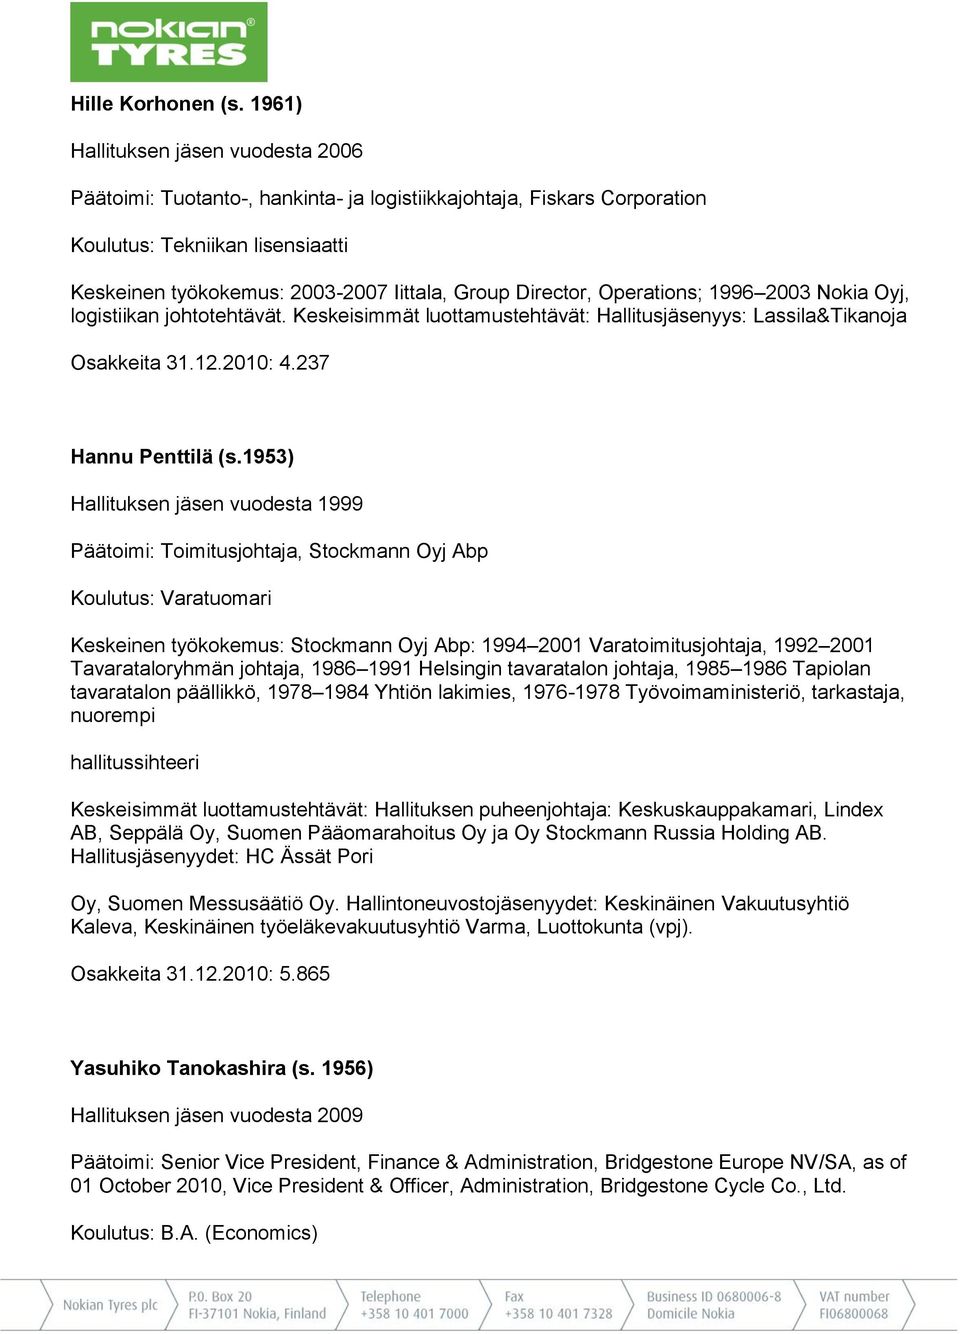 Director, Operations; 1996 2003 Nokia Oyj, logistiikan johtotehtävät. Keskeisimmät luottamustehtävät: Hallitusjäsenyys: Lassila&Tikanoja Osakkeita 31.12.2010: 4.237 Hannu Penttilä (s.